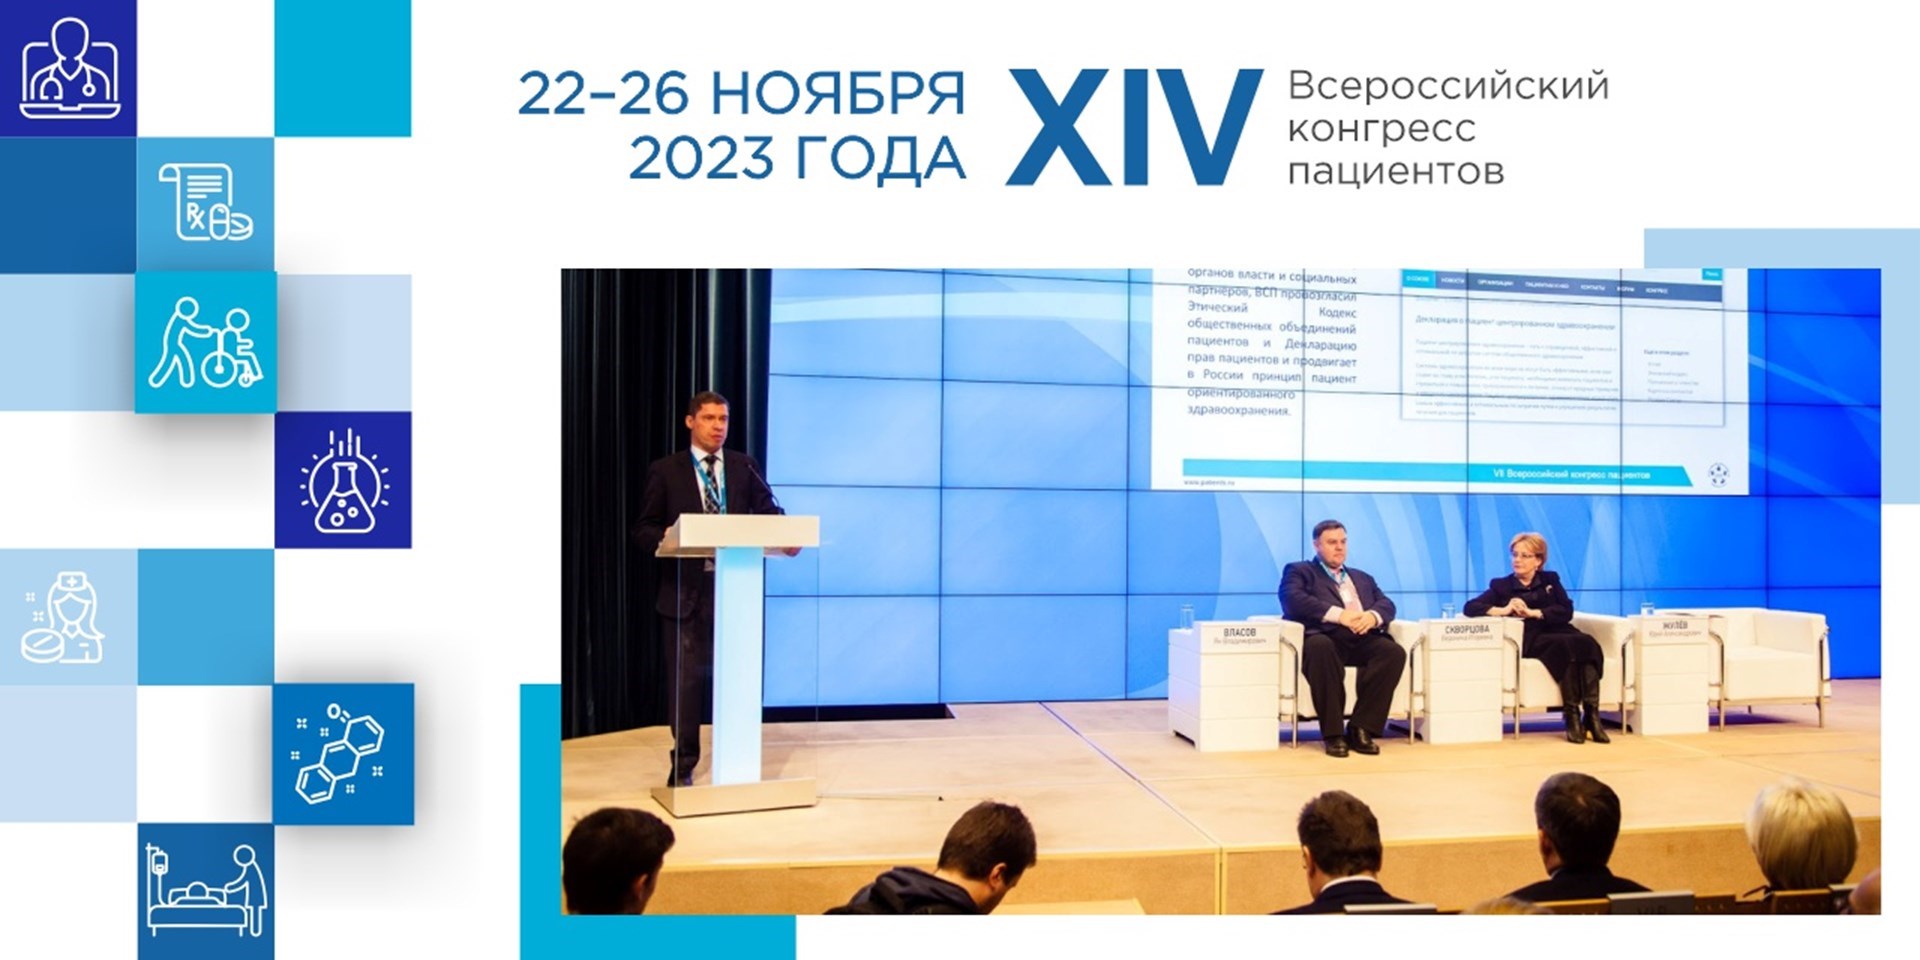 ВСП приглашает принять участие в XIV Всероссийском конгрессе пациентов 